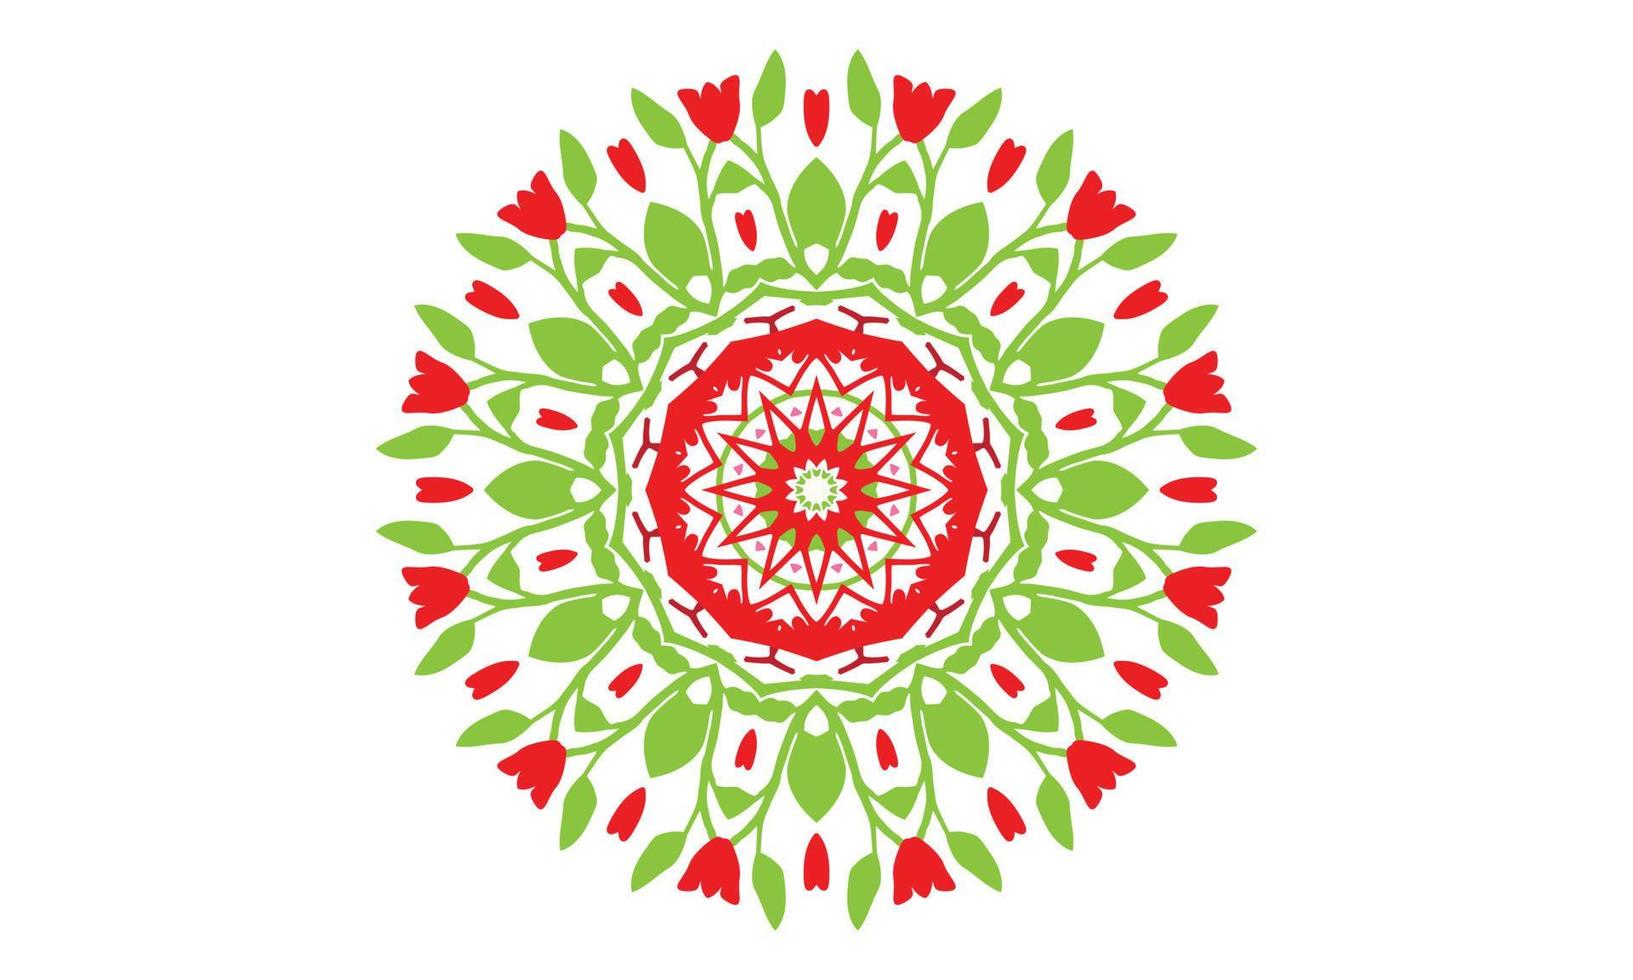 Luxus-Mandala-Design-Vektor-Hintergrund Vintage abstrakte Blumenmuster-Design vektor